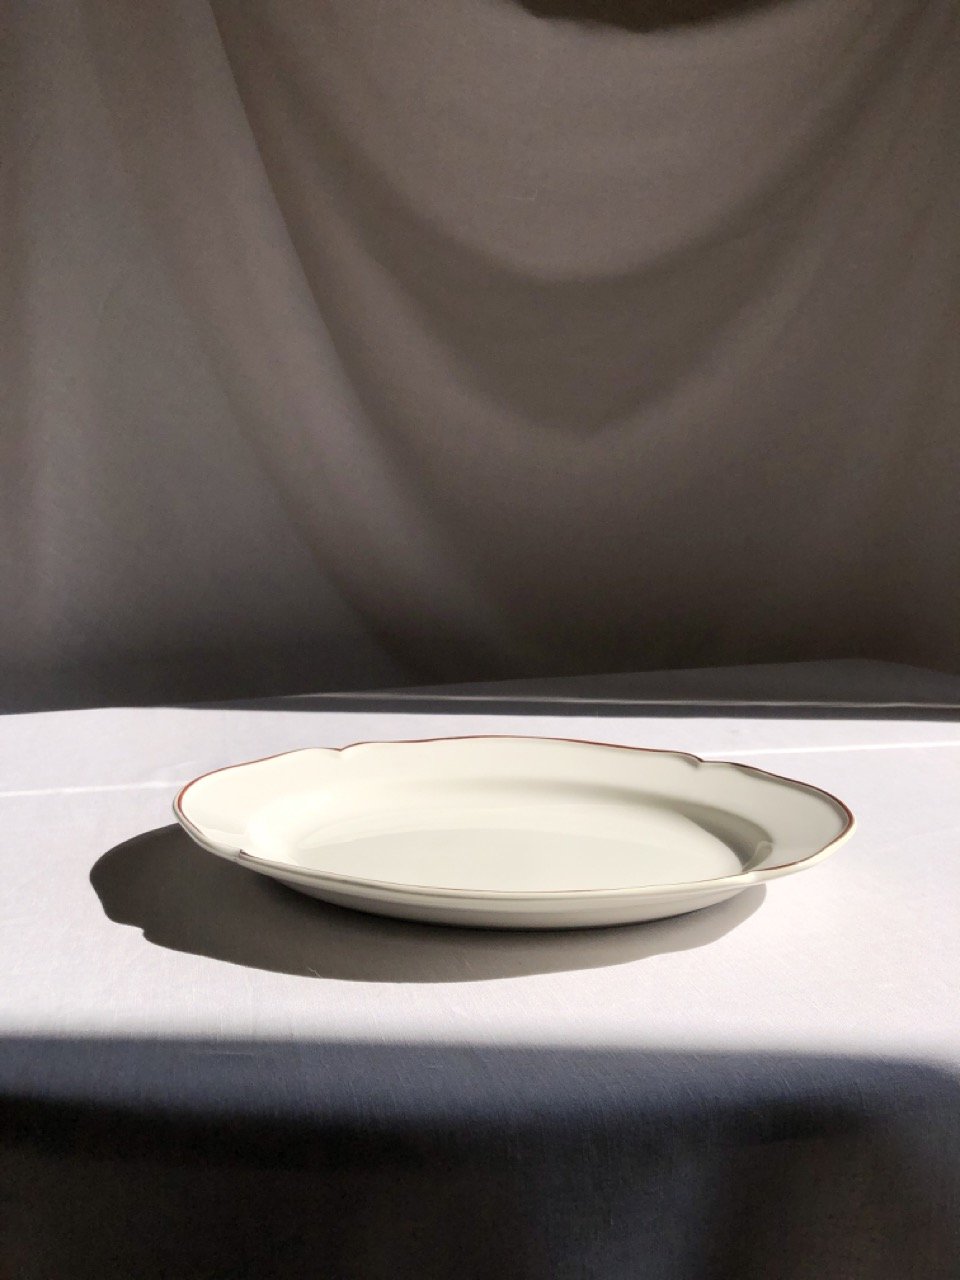 V.VM Trattoria Collection - Medium Oval Serving Platter